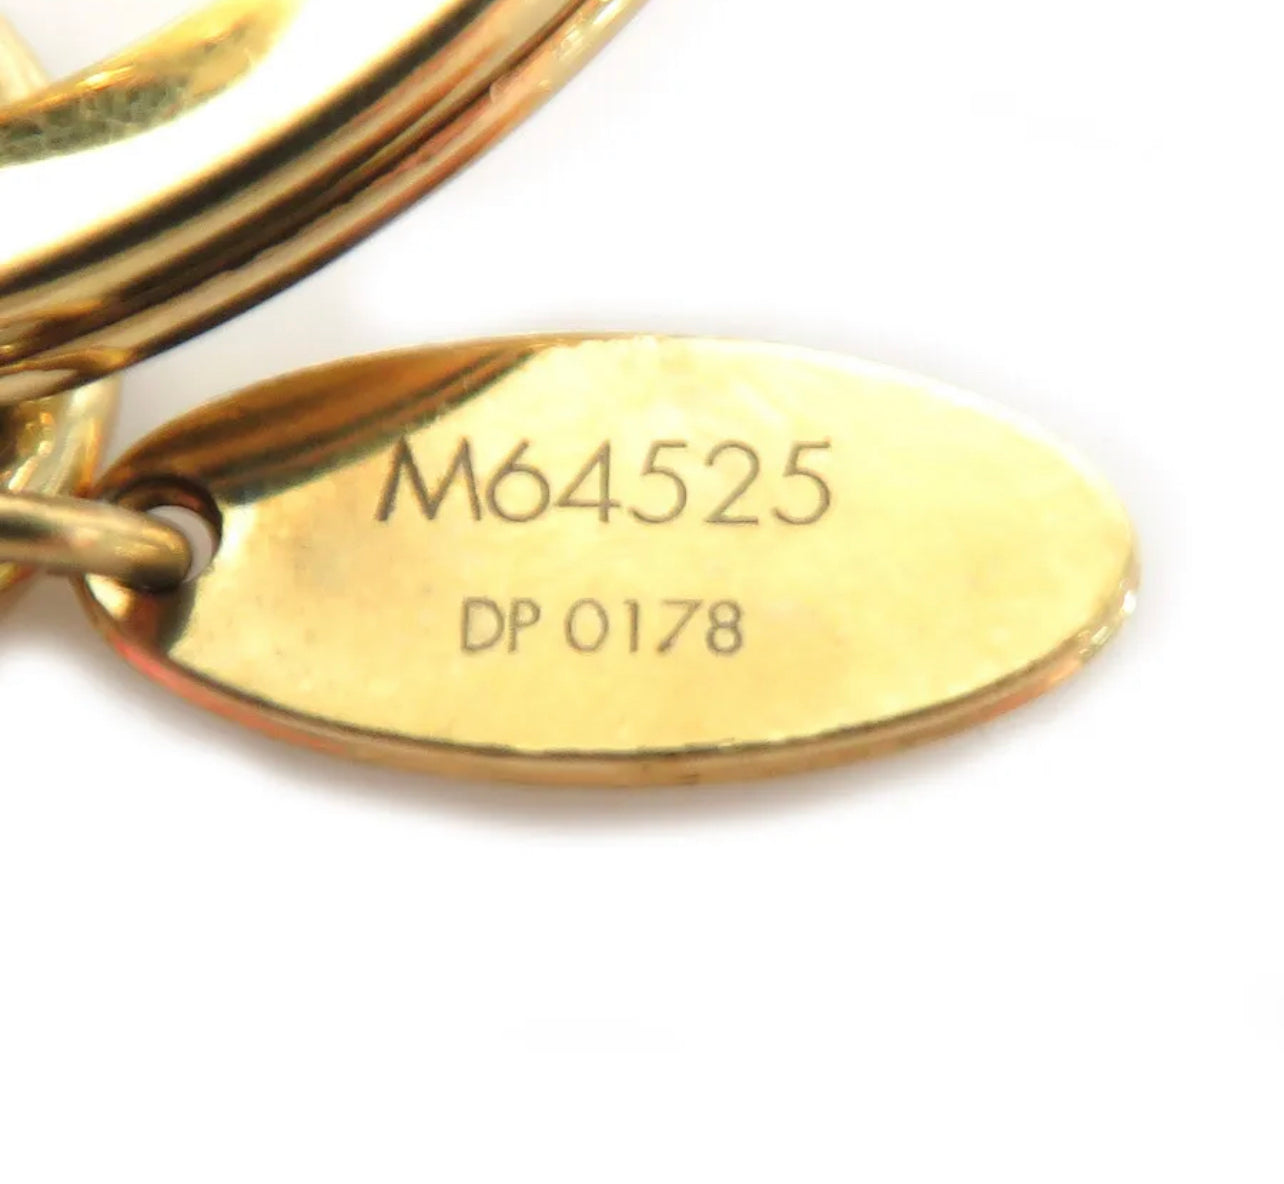 louis vuitton m64525 colorline bag charm key holder